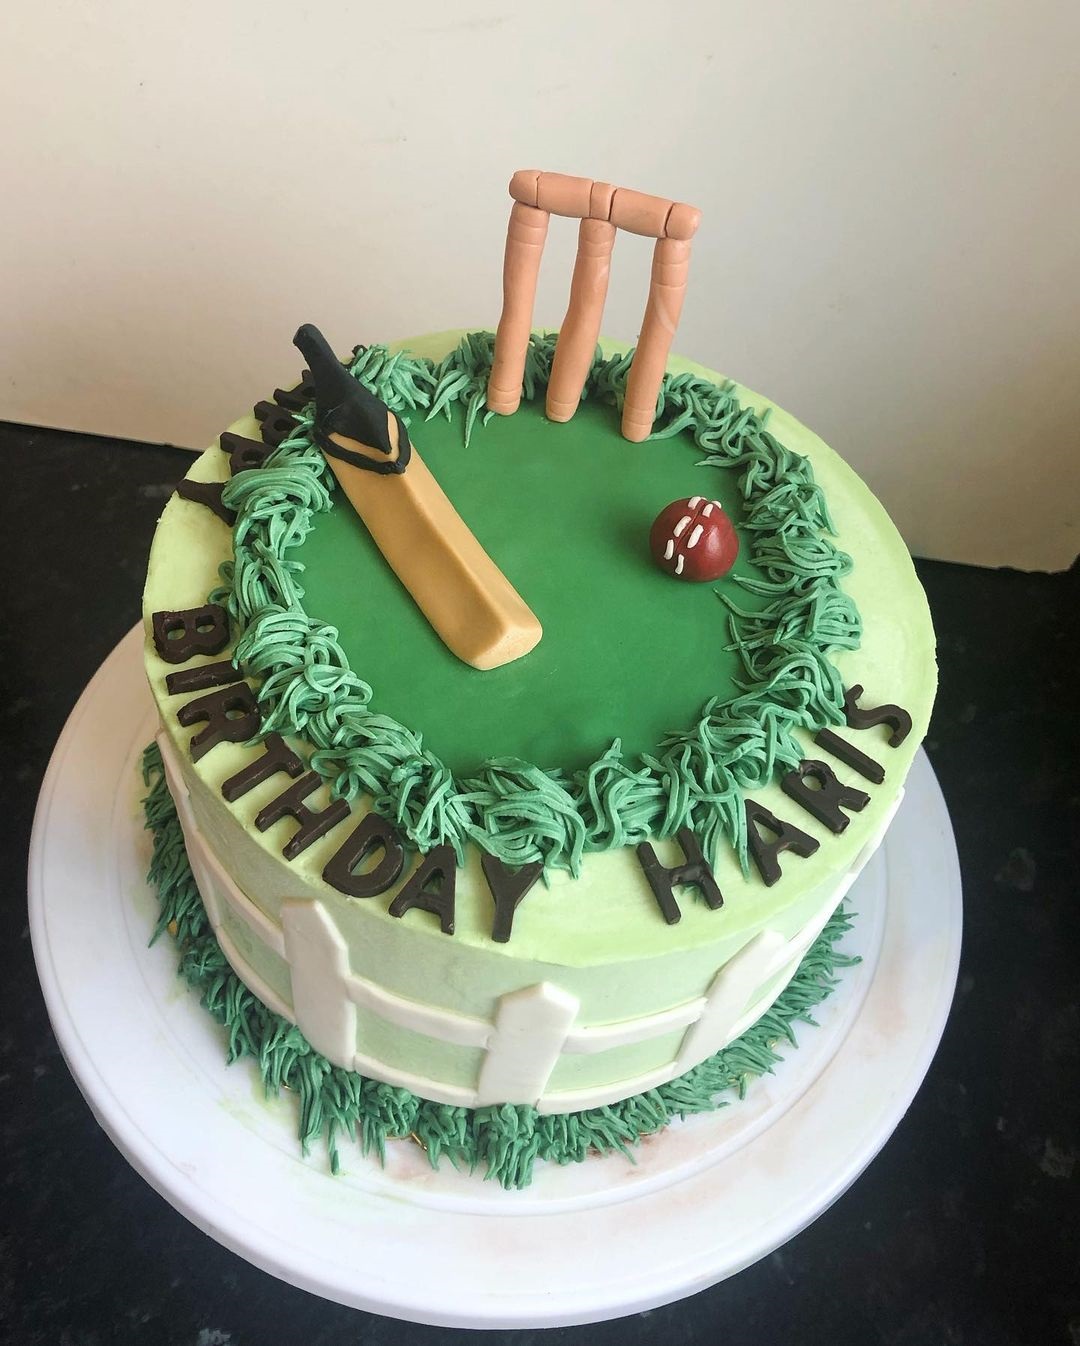 Cricket fan cake